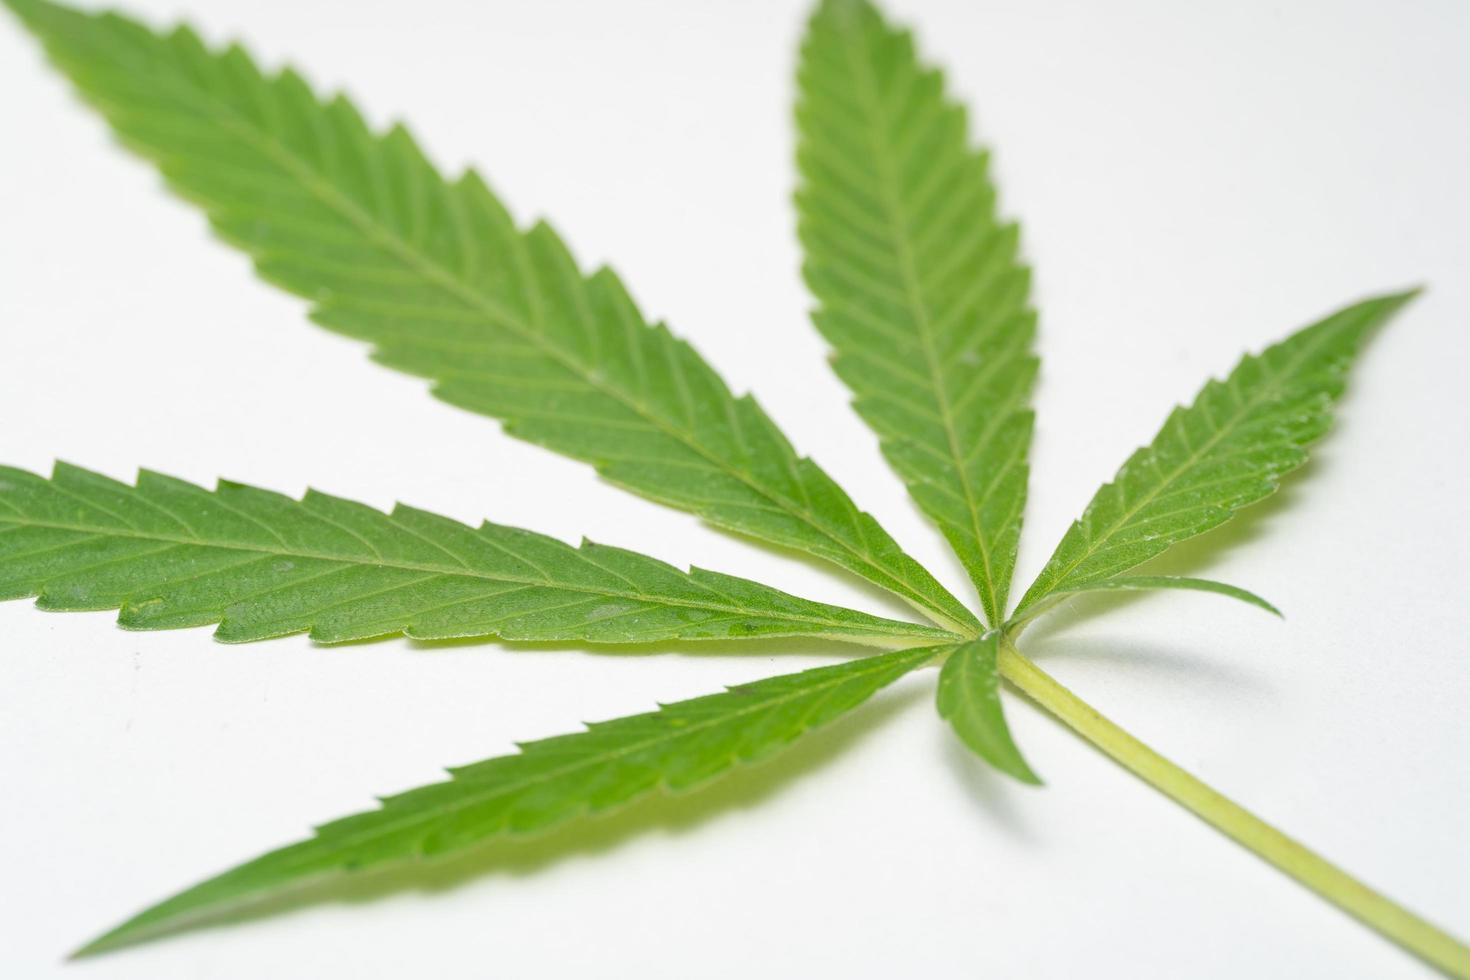 Marijuana Leaf on white background. Selective focus. Cannabis - isolated on white background. Growing medical marijuana photo